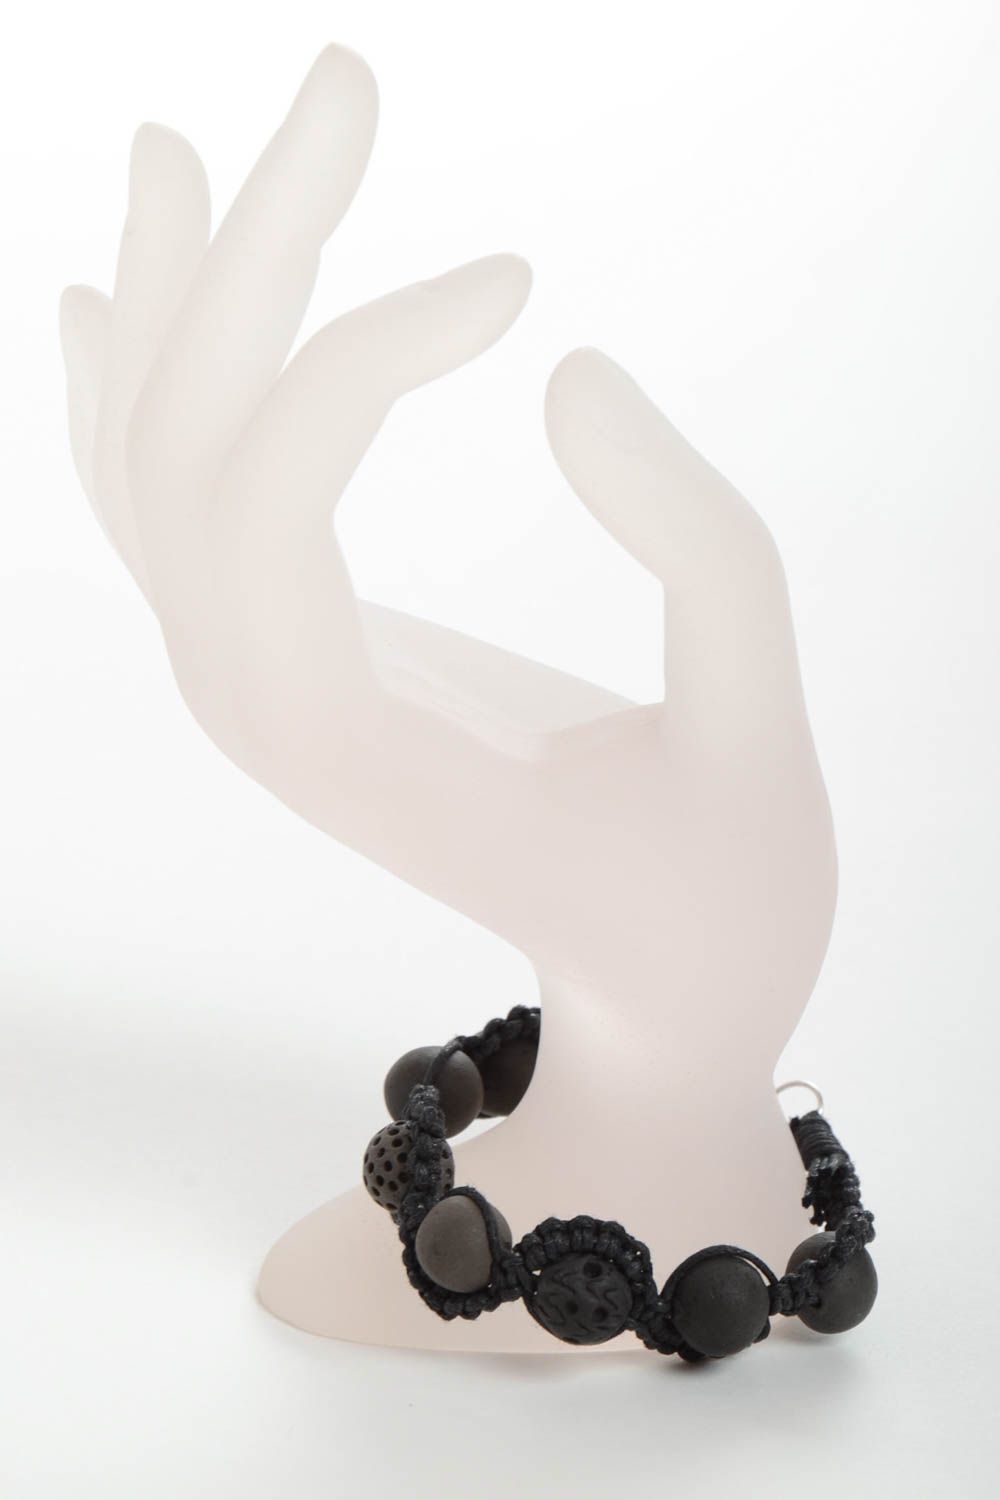 Авторский плетеный браслет с керамическими бусинами темный аксессуар хенд мейд фото 3